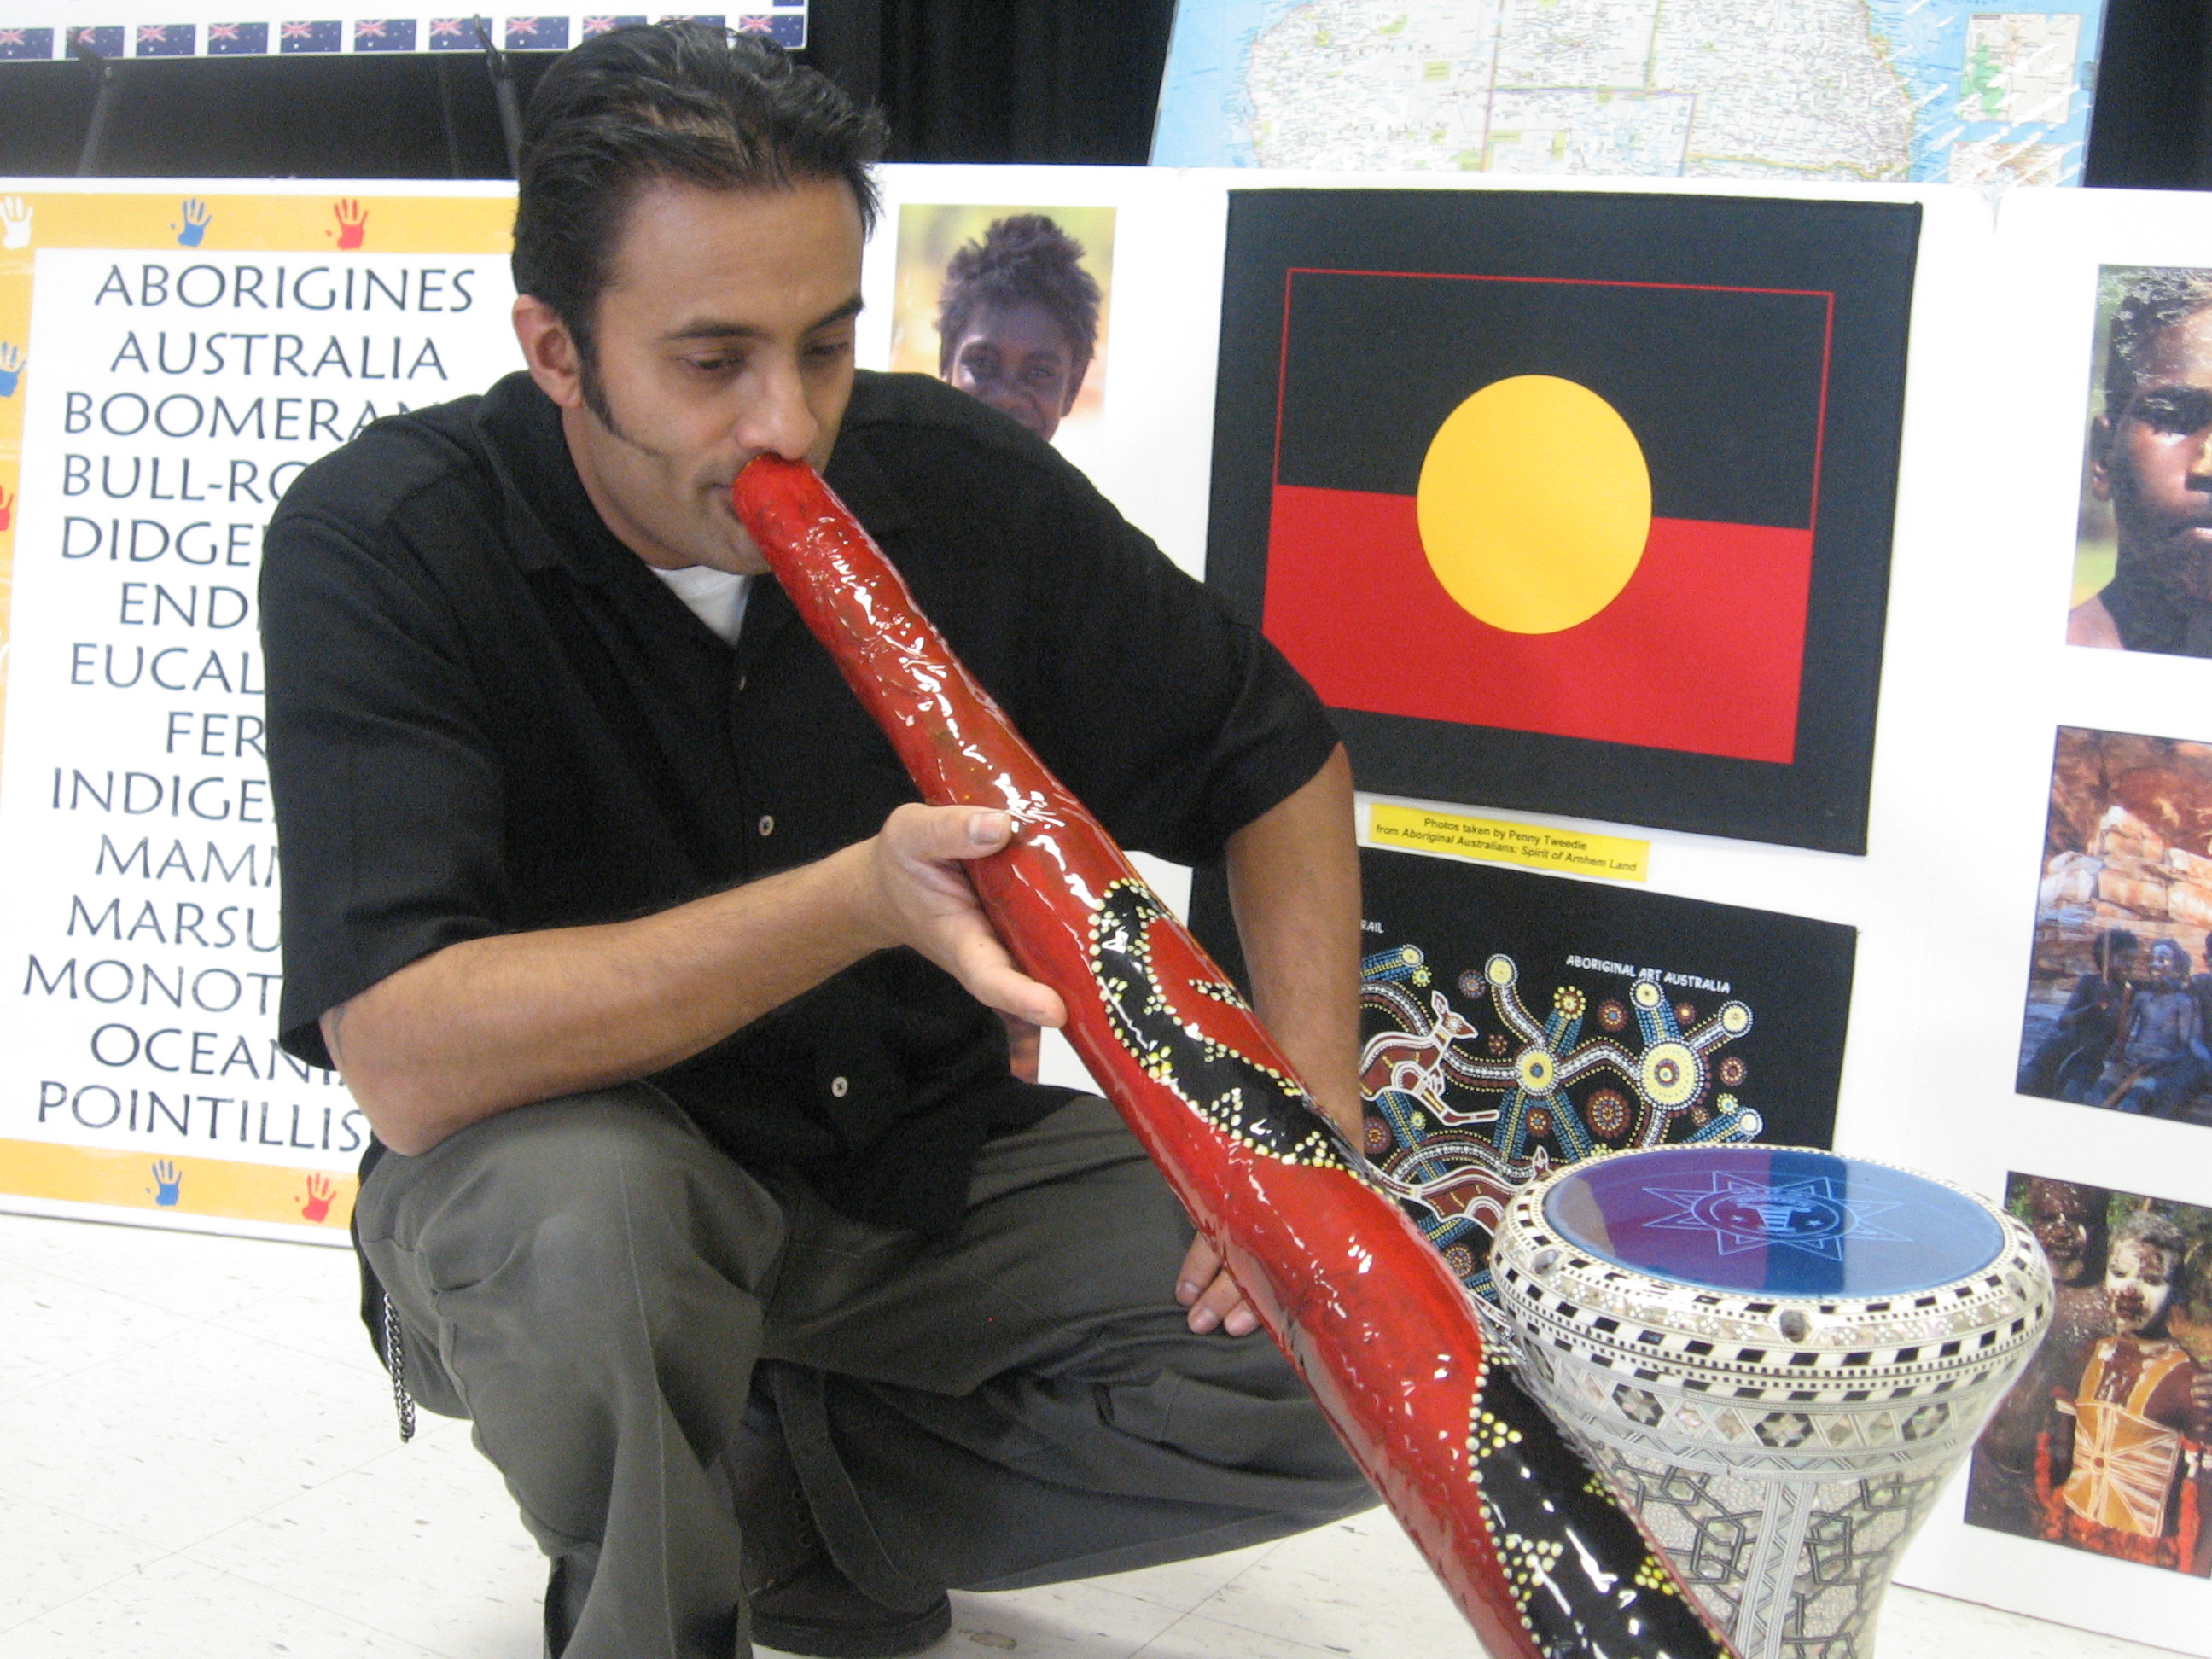 Playing the didgeridoo